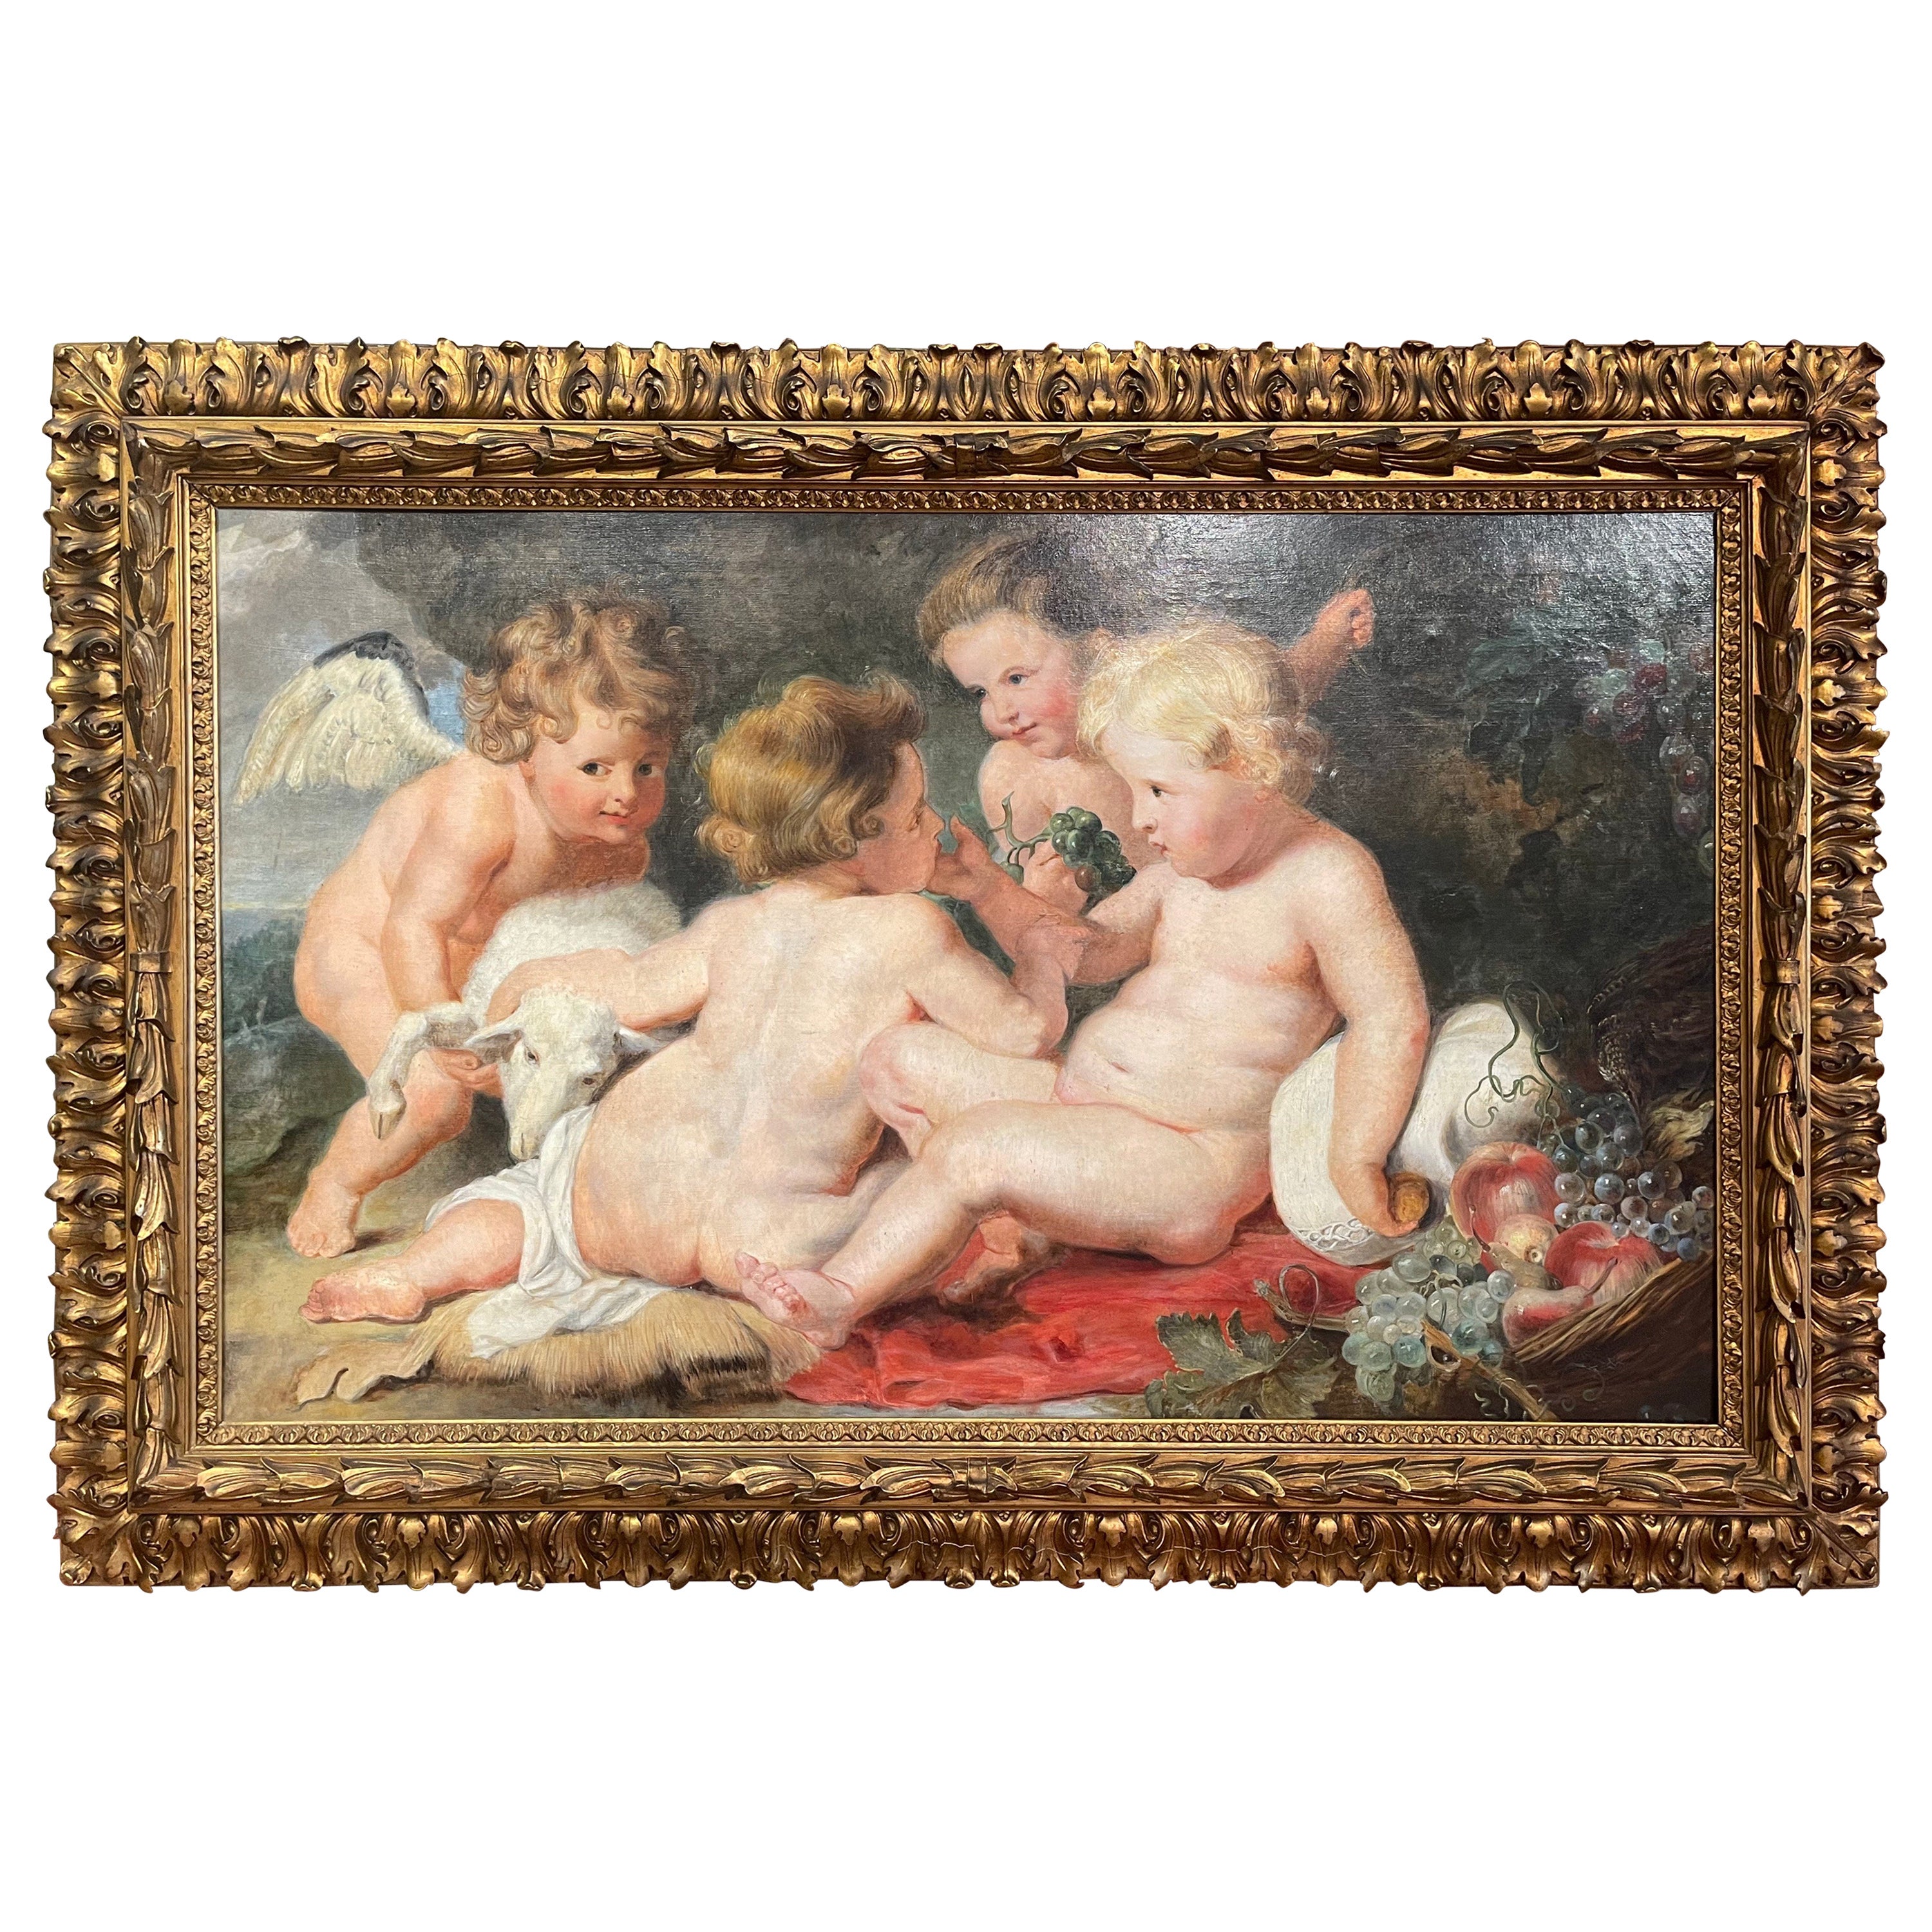 Gerahmtes Ölgemälde auf Leinwand, Gemälde von Christus und St. Johannes, nach P. Rubens, 19. Jahrhundert